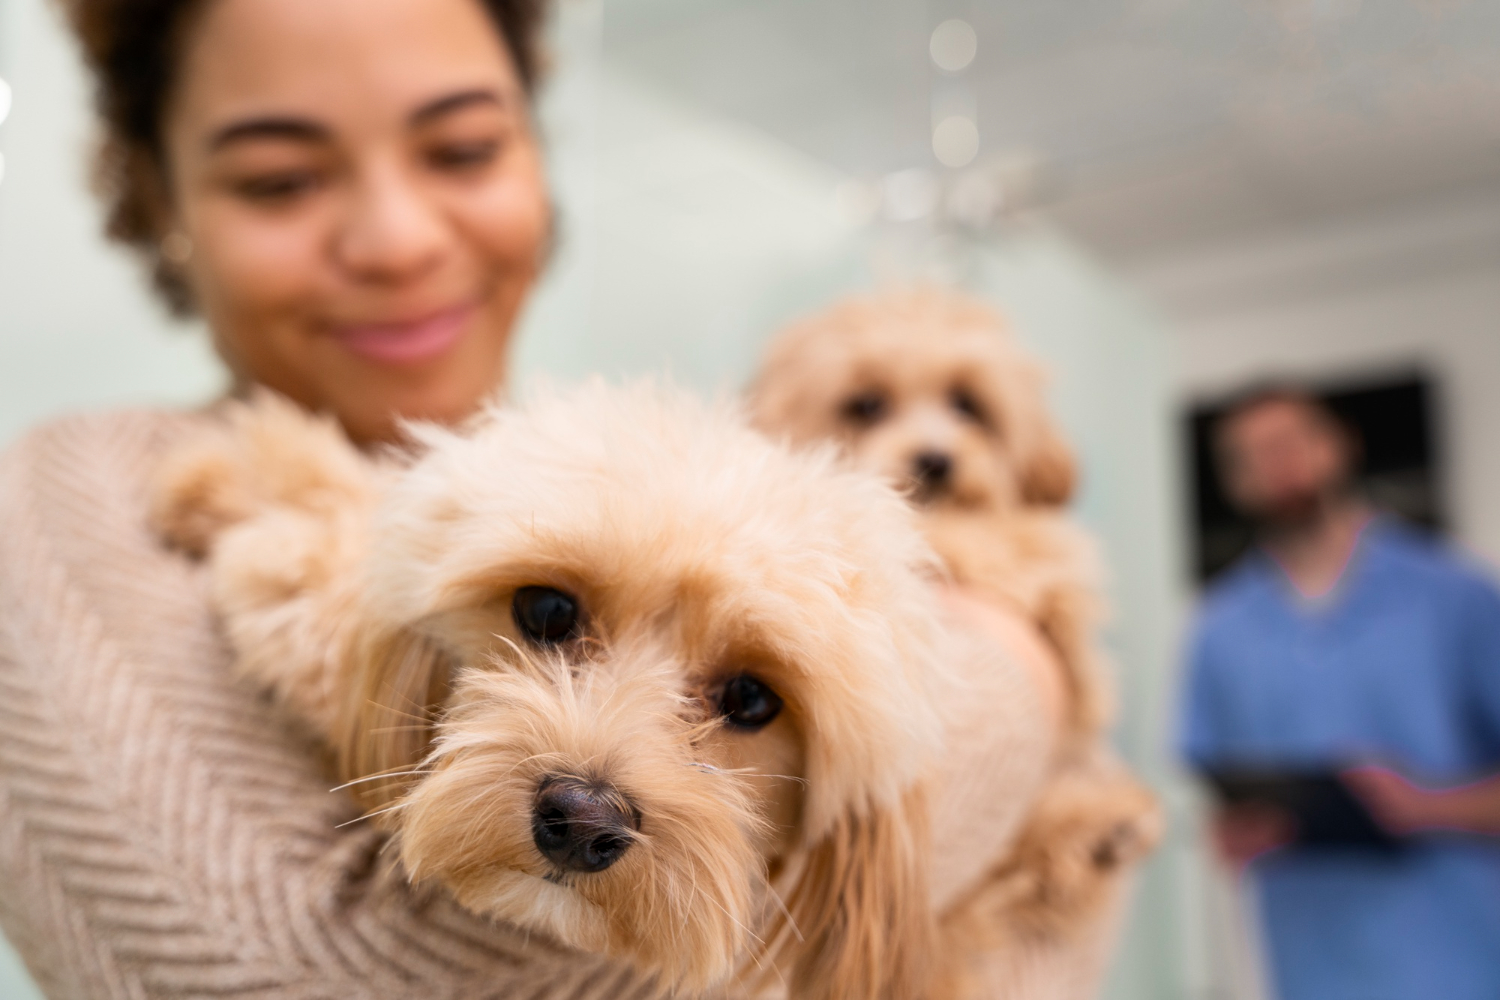 5 claves para minimizar, evitar y/o resolver conflictos con los clientes de tu veterinaria